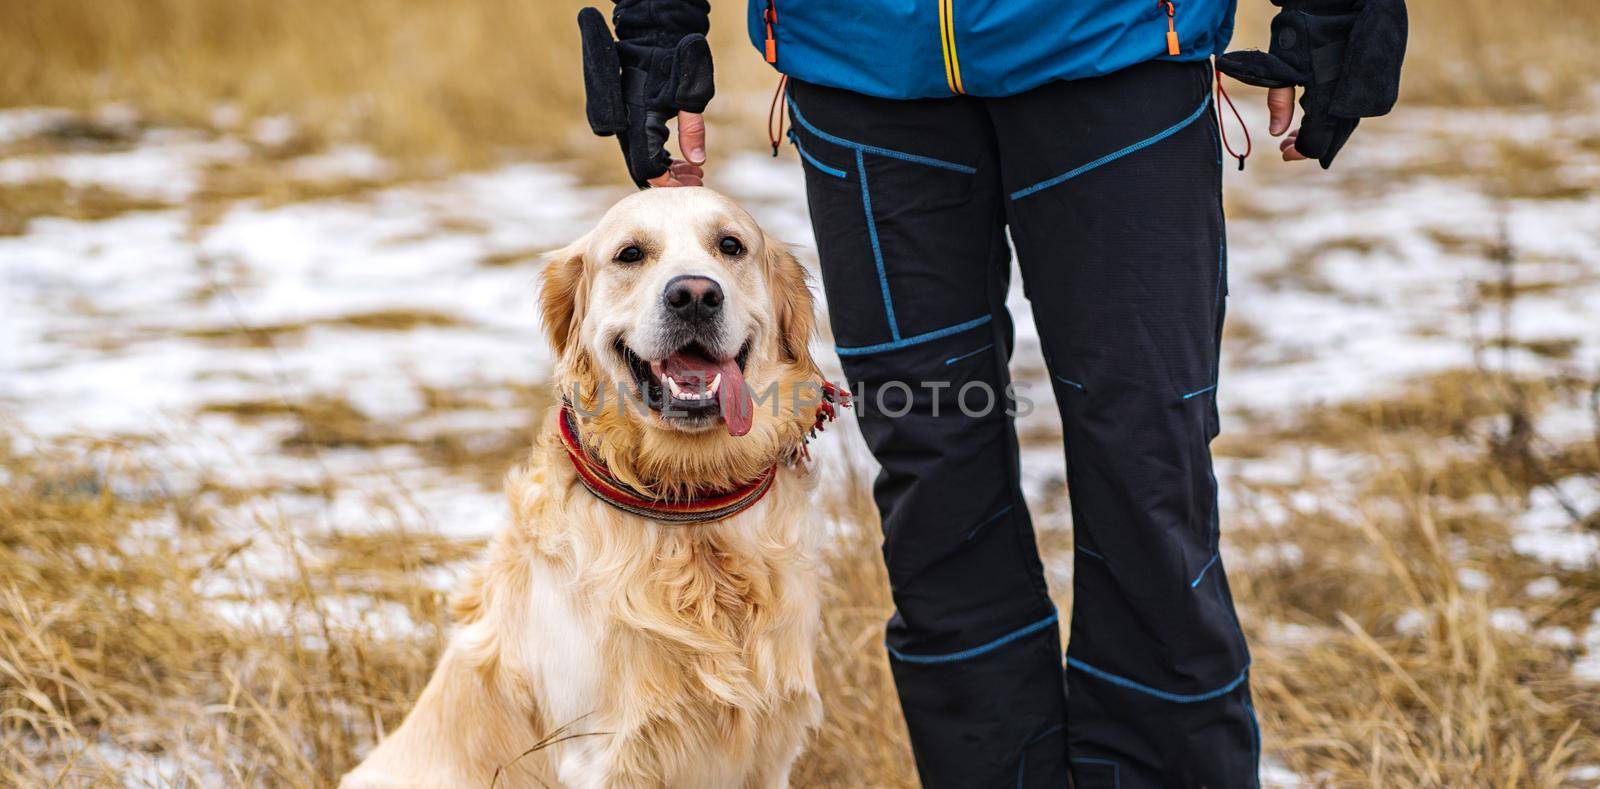 Golden retriever dog walking in the winter field by GekaSkr